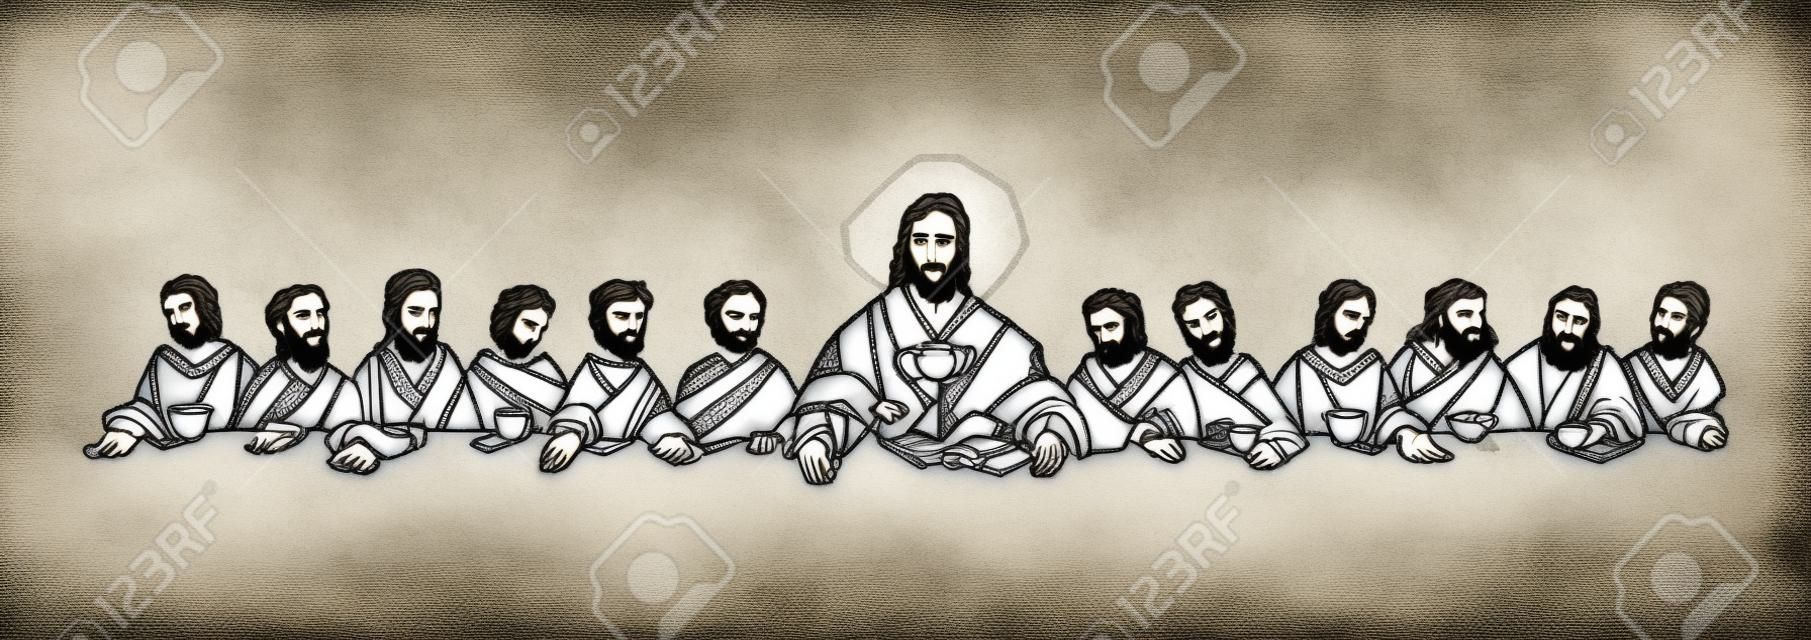 Illustrazione disegnata a mano o disegno di Gesù Cristo con i discepoli durante l'Ultima Cena